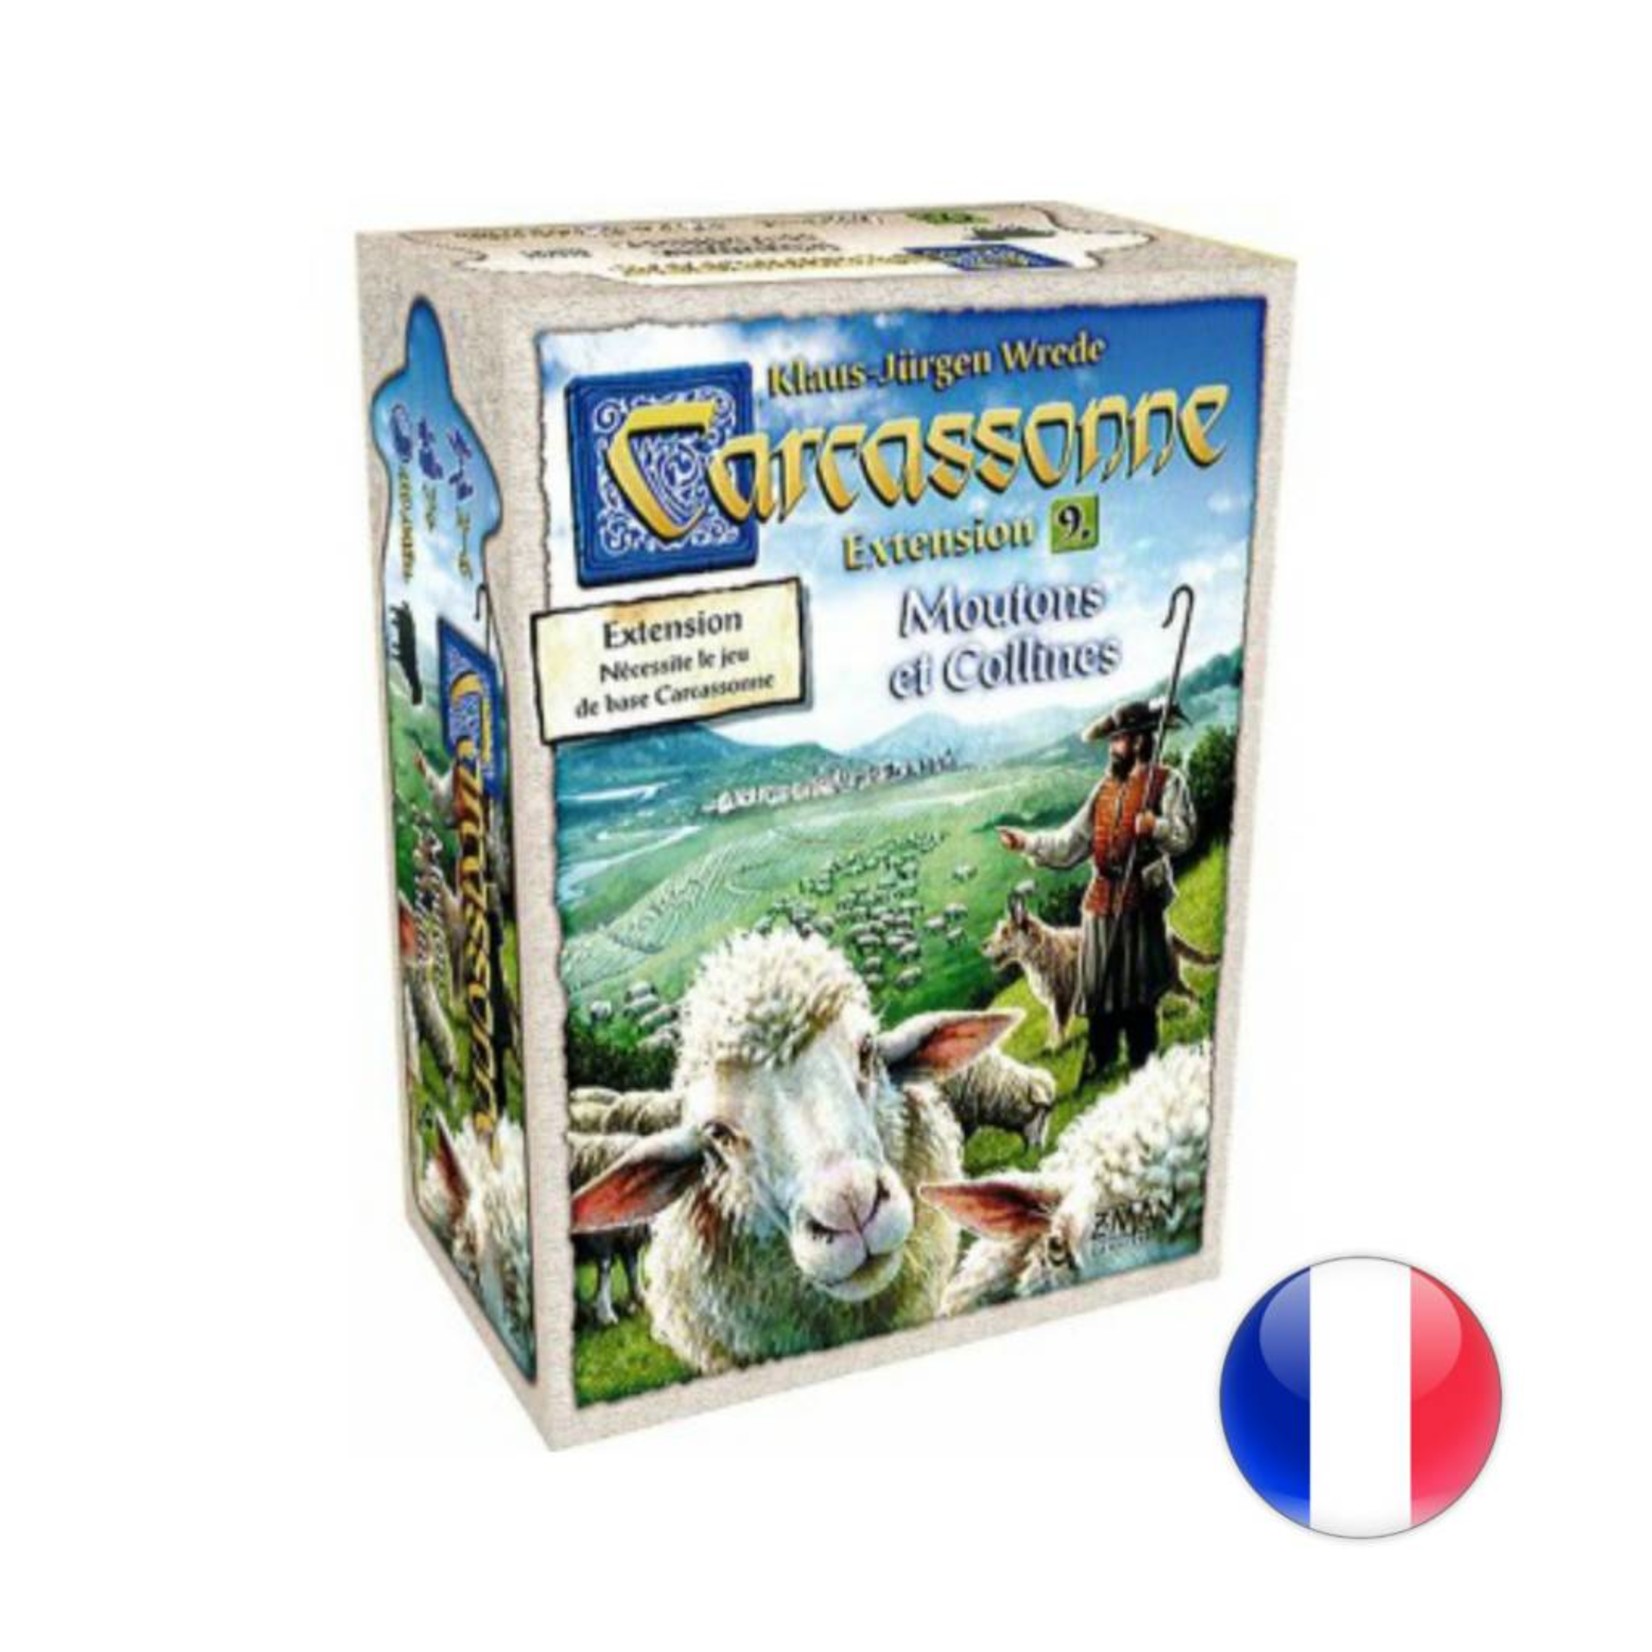 Filosofia Carcassonne: Moutons et collines